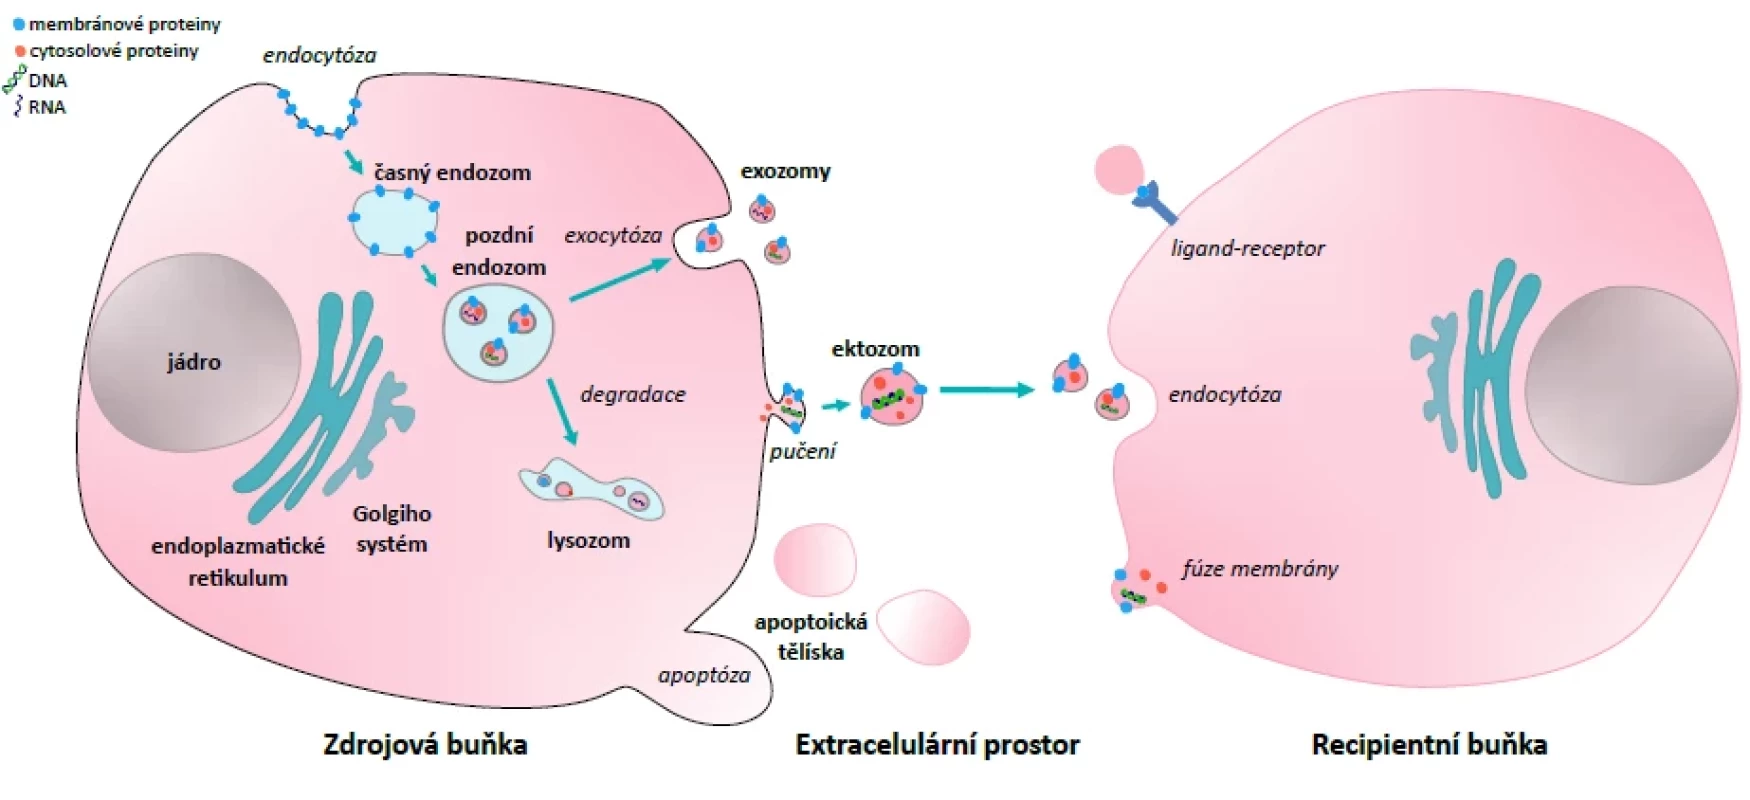 Extracelulární vezikuly – biogeneze a jejich role v mezibuněčné komunikaci</br>Figure 1. Extracellular vesicles – biogenesis and their role in intercellular communication